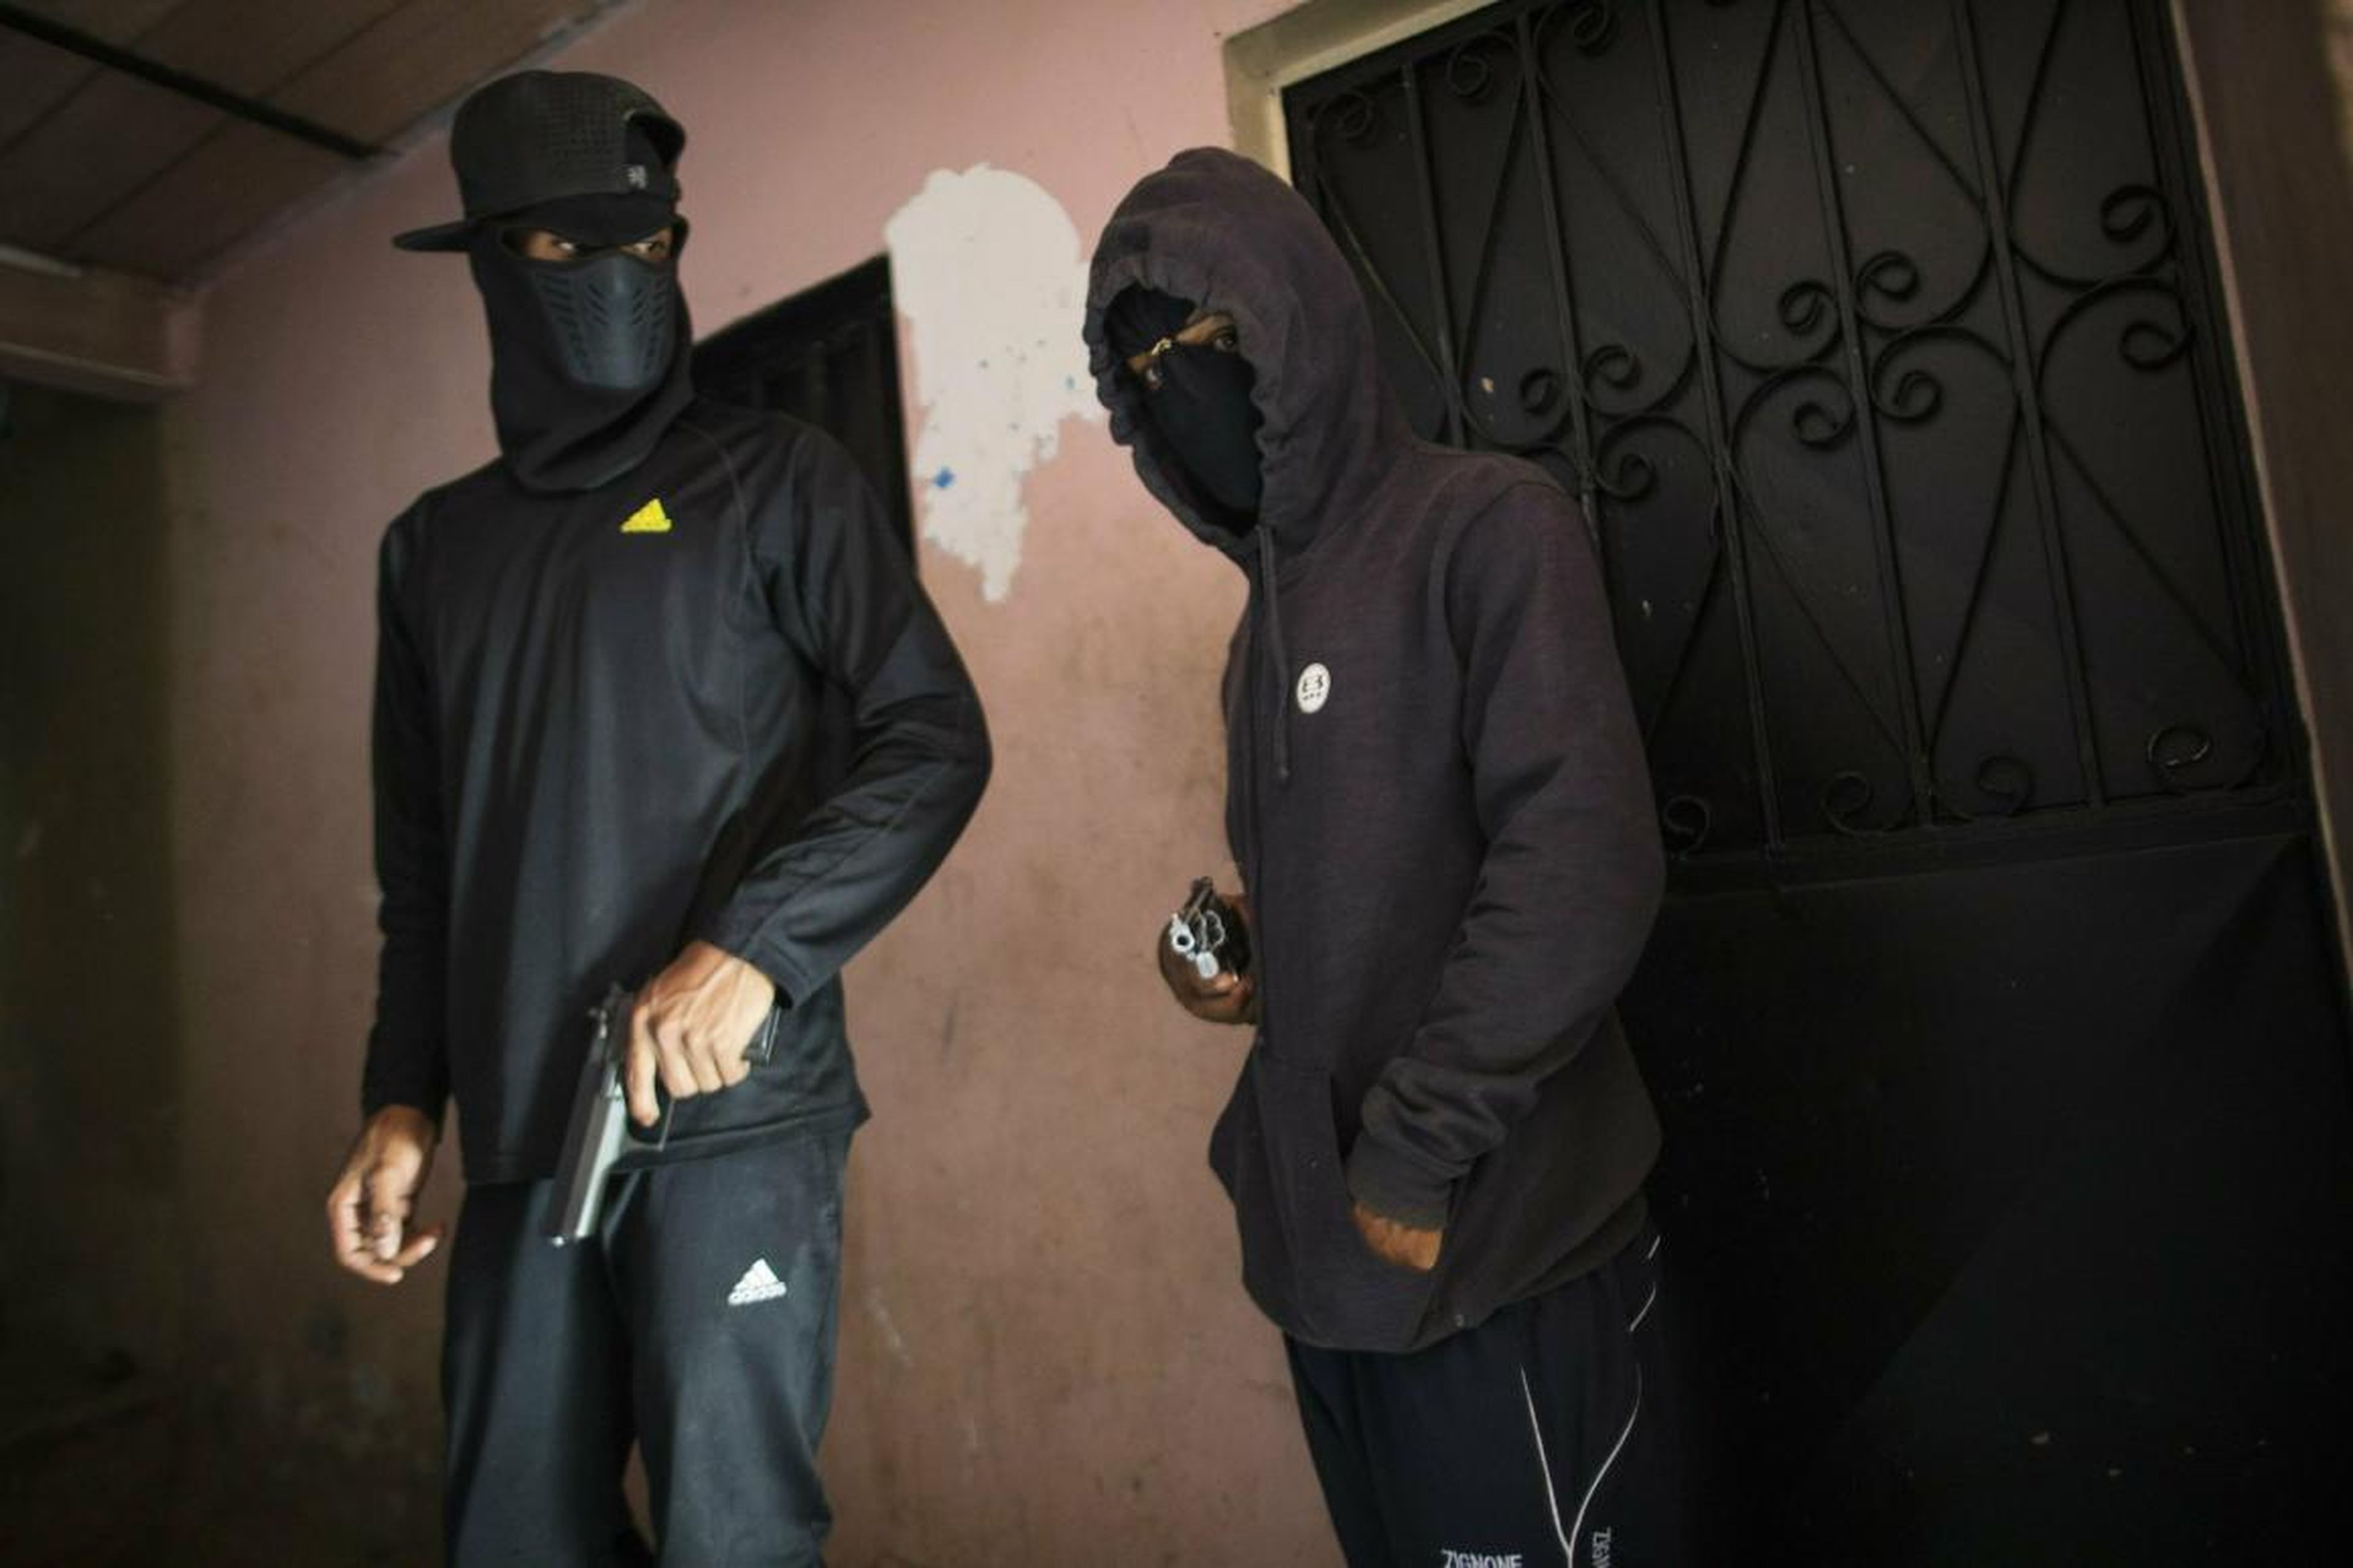 Criminales enmascarados que se apodan con nombres como "El Negrito", a la derecha, y "Dog", y son miembros de la banda Crazy Boys.